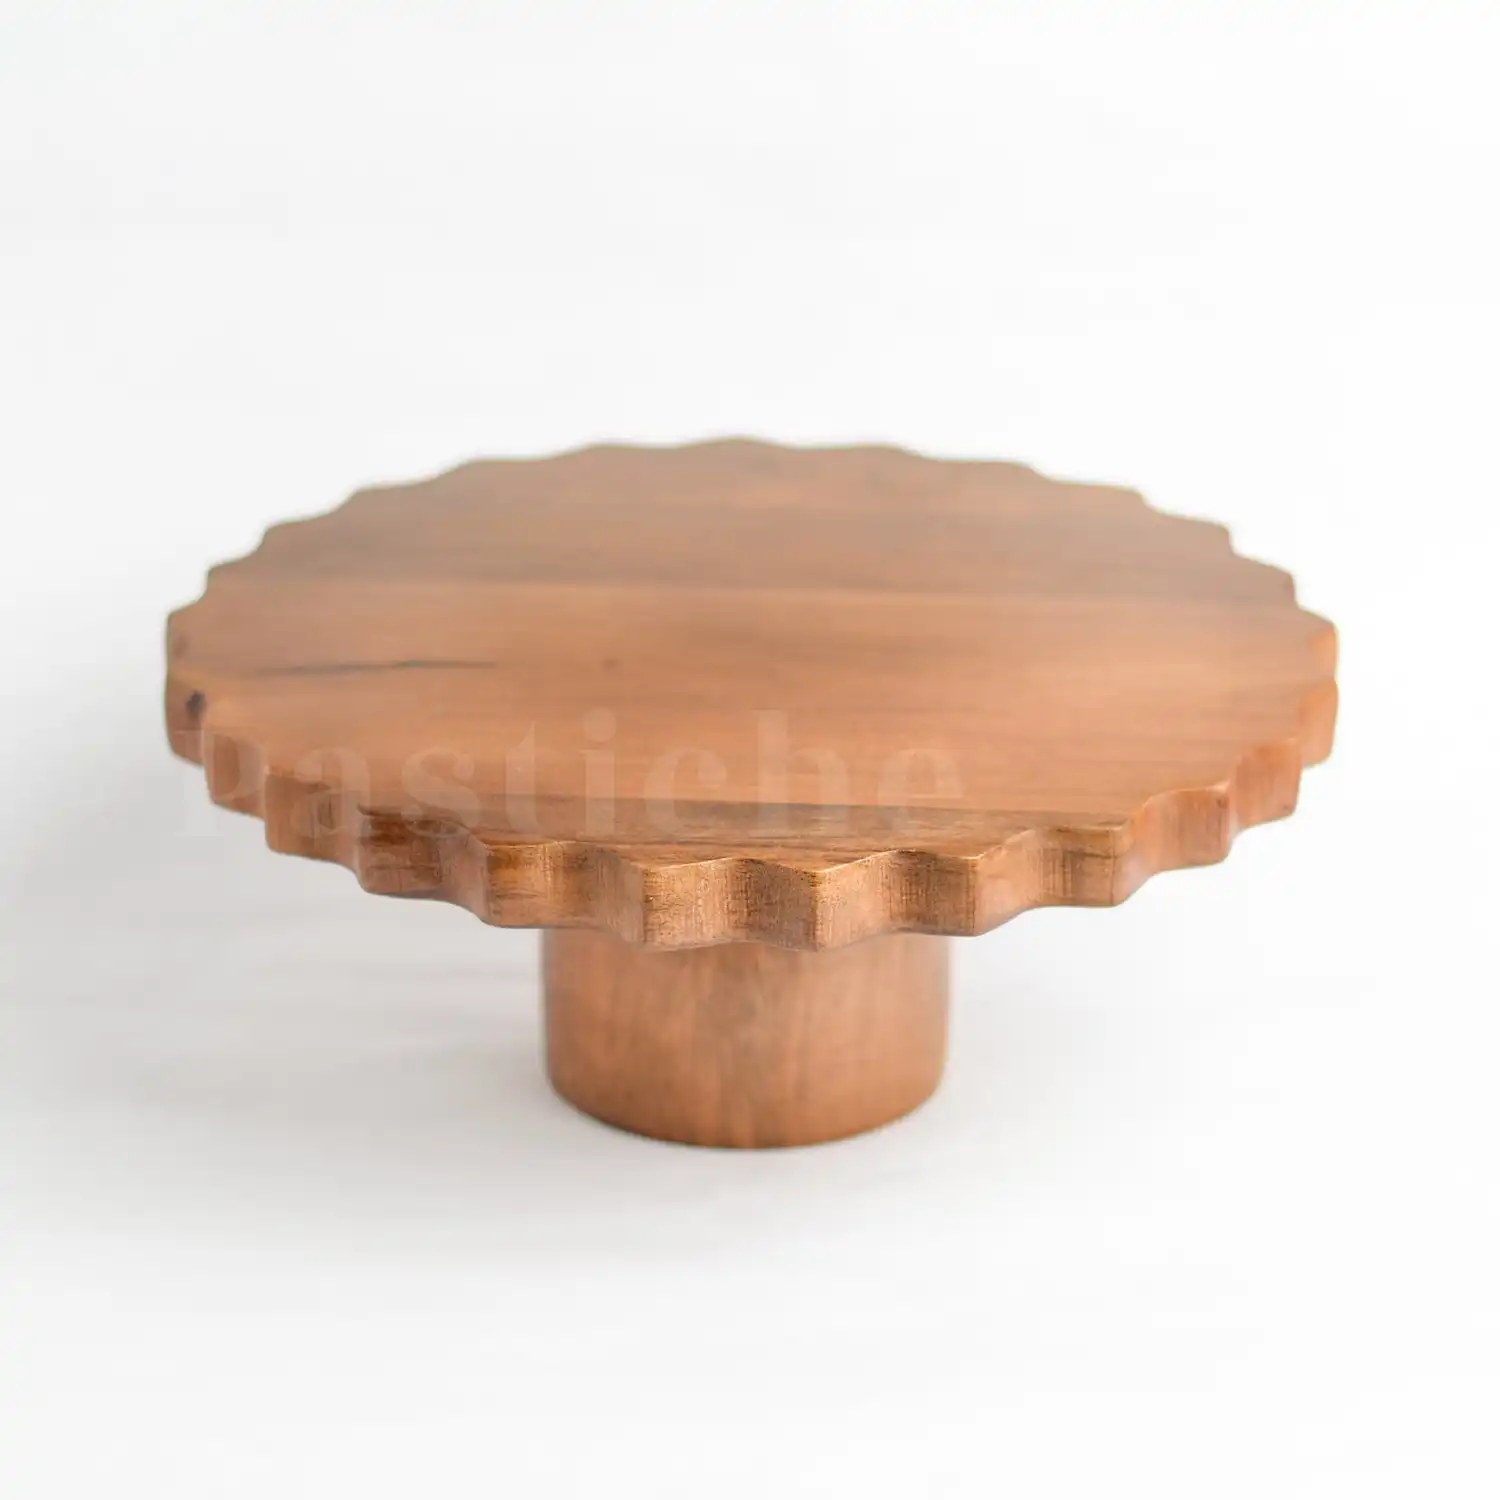 Nuevo soporte de madera para pasteles para mesa de postres, Soporte redondo para pasteles de madera, soporte de madera para pasteles listo para enviar por OMEGA METALS INDIA